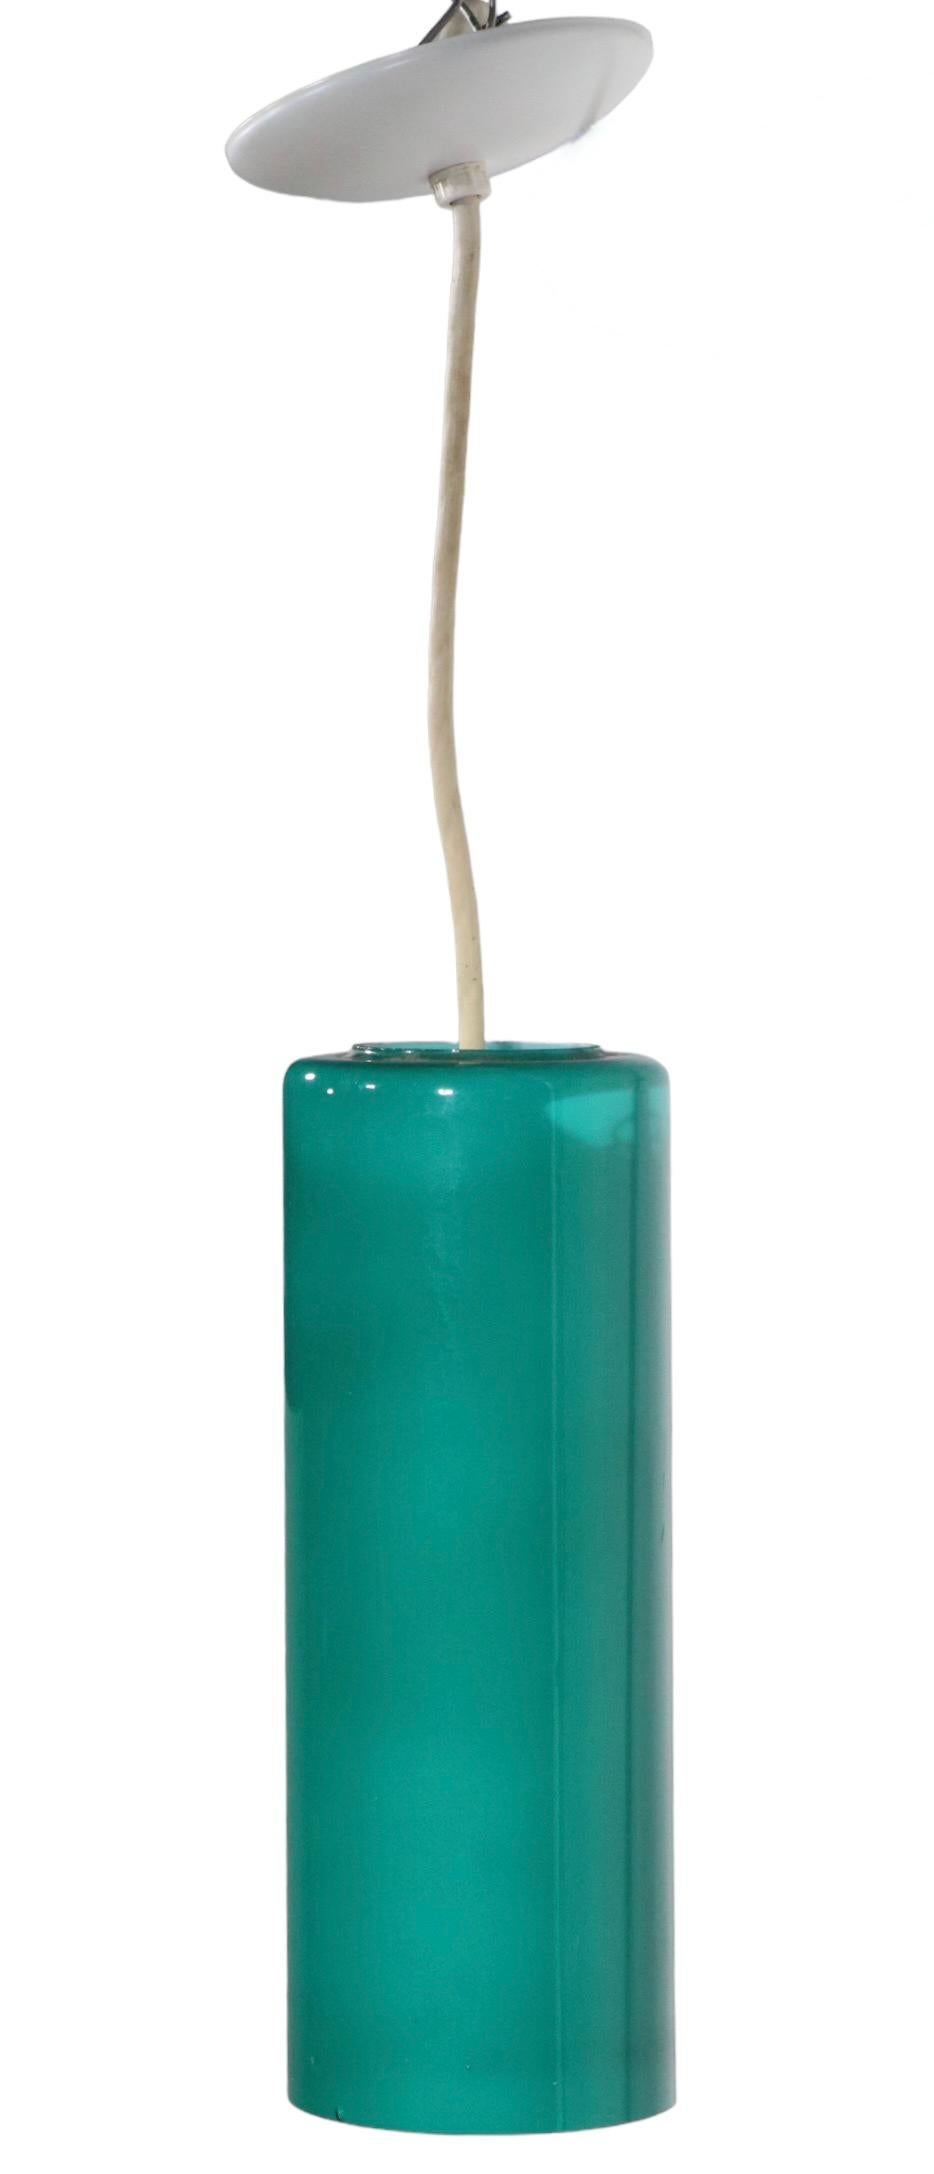 Hübsche zylindrische Hängeleuchte aus grünem Glas mit weißer Innenseite, zugeschrieben Prescolite, um 1950/1970. Die Leuchte ist in einem sehr guten, originalen, sauberen und funktionstüchtigen Zustand, mit nur einem unbedeutenden Fehler an der